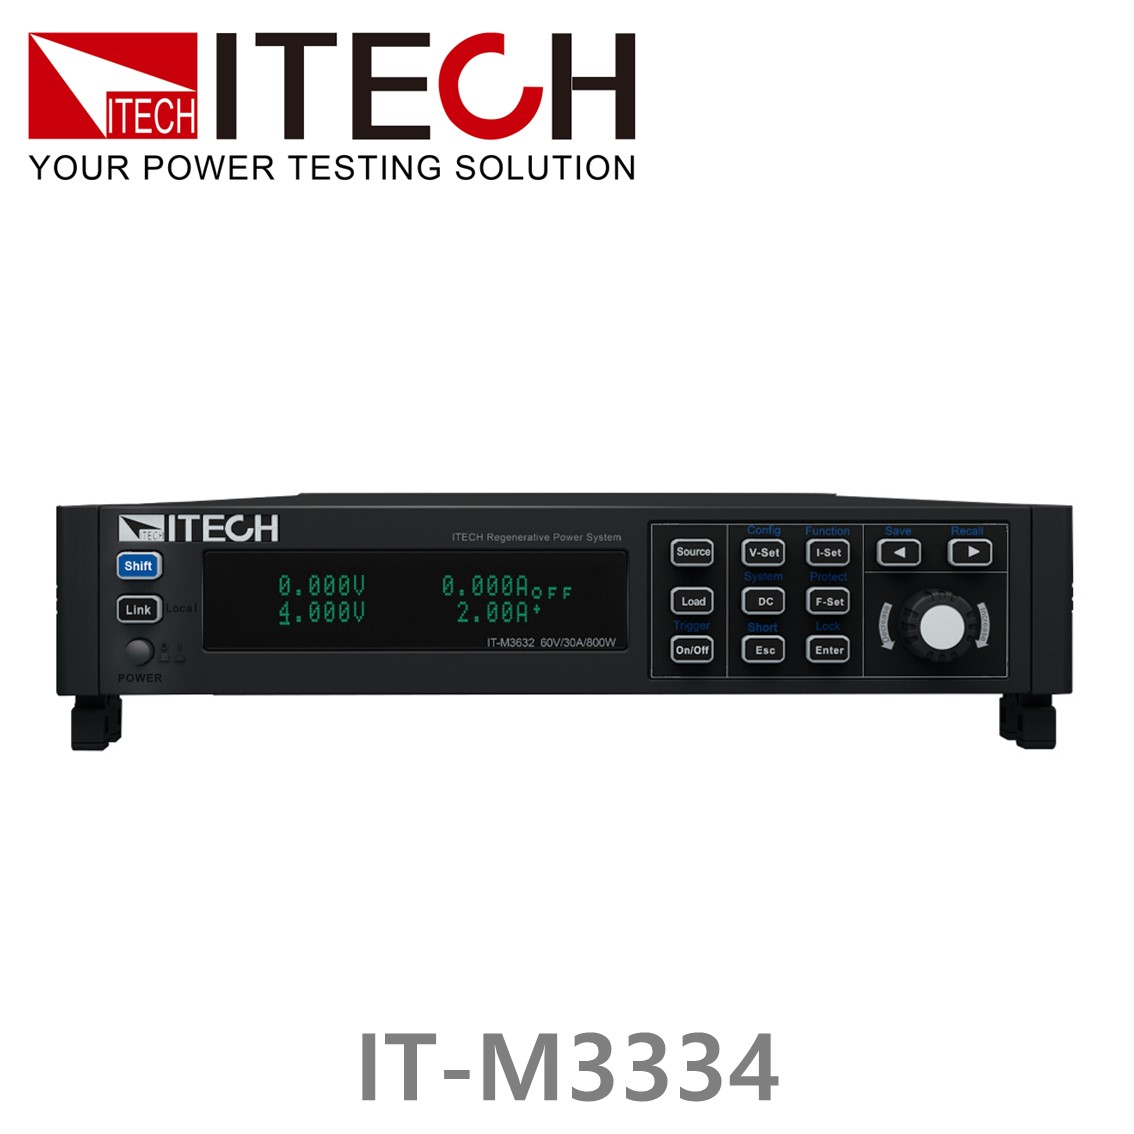 [ ITECH ] IT-M3334 DC전자부하기 (300V/6A/800W), DC전자로드